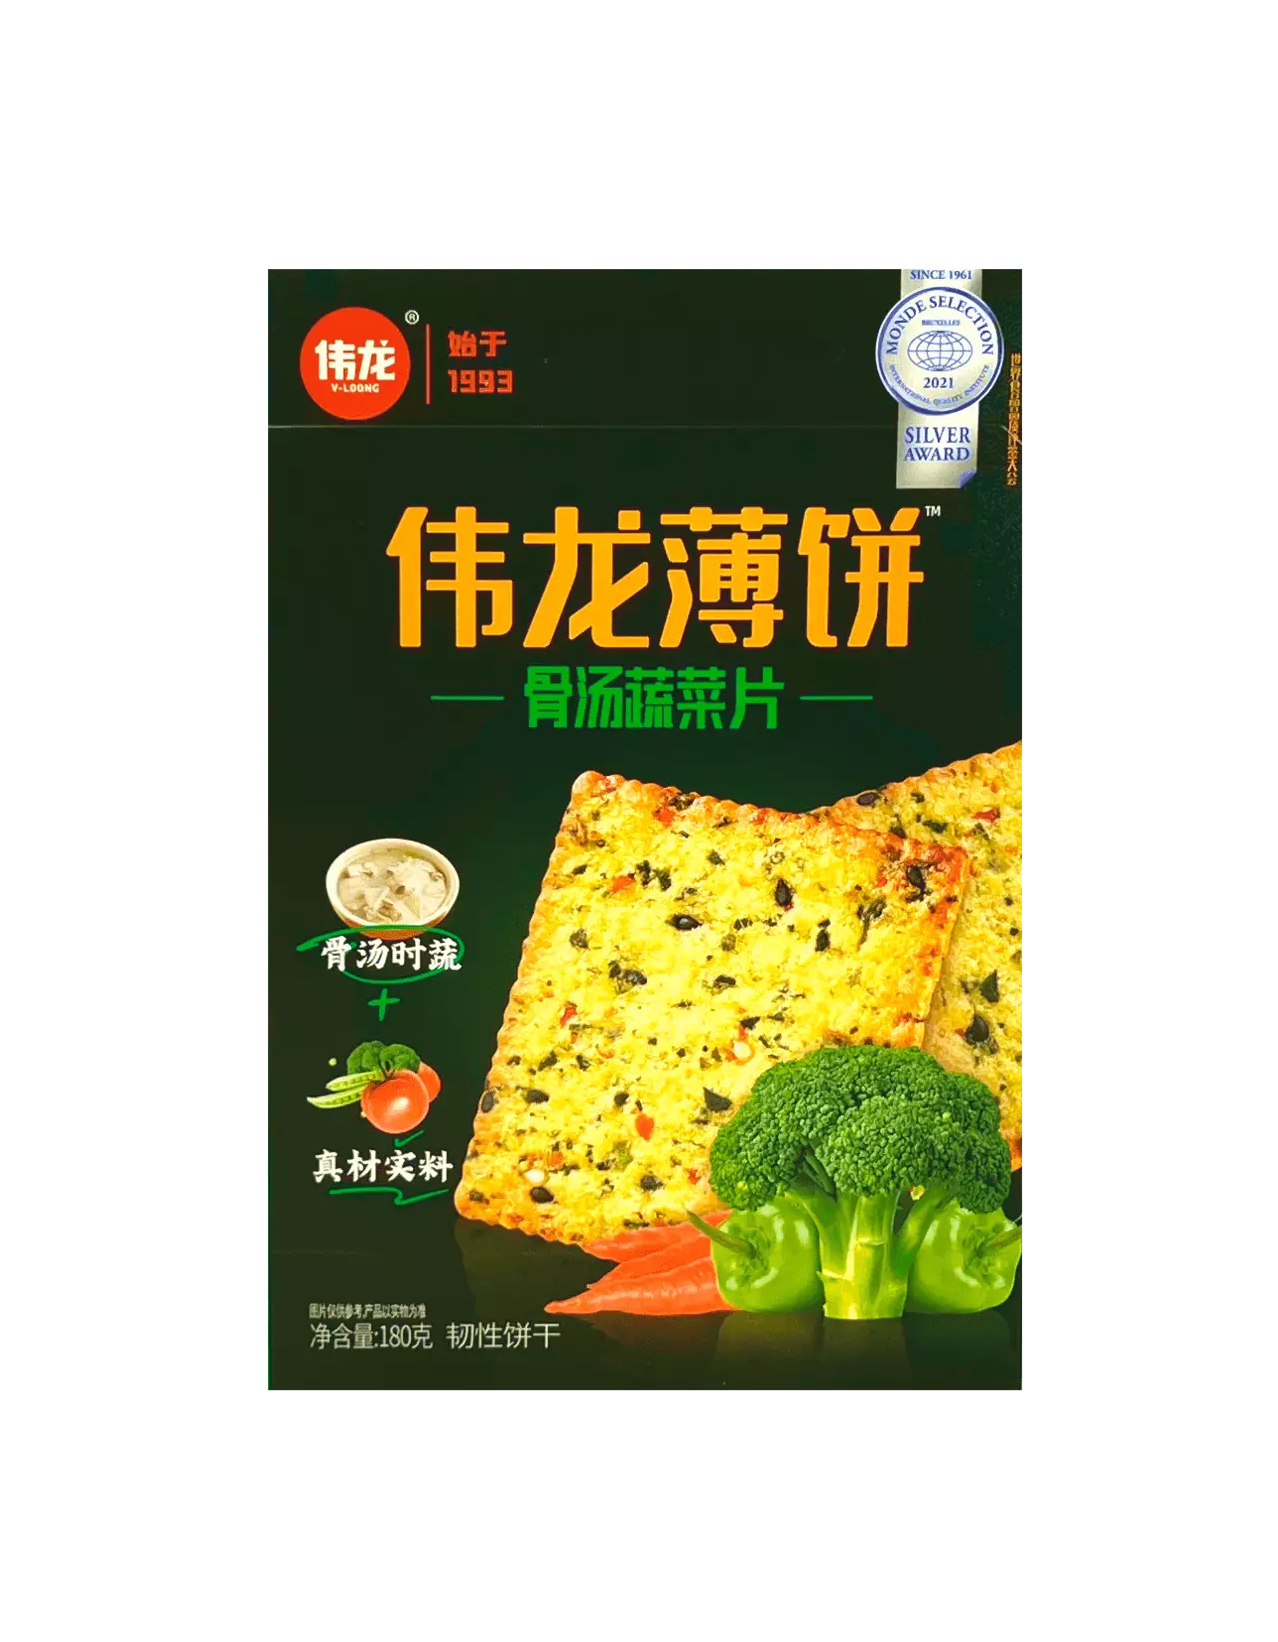 伟龙薄饼 骨汤蔬菜片 180g 伟龙 中国